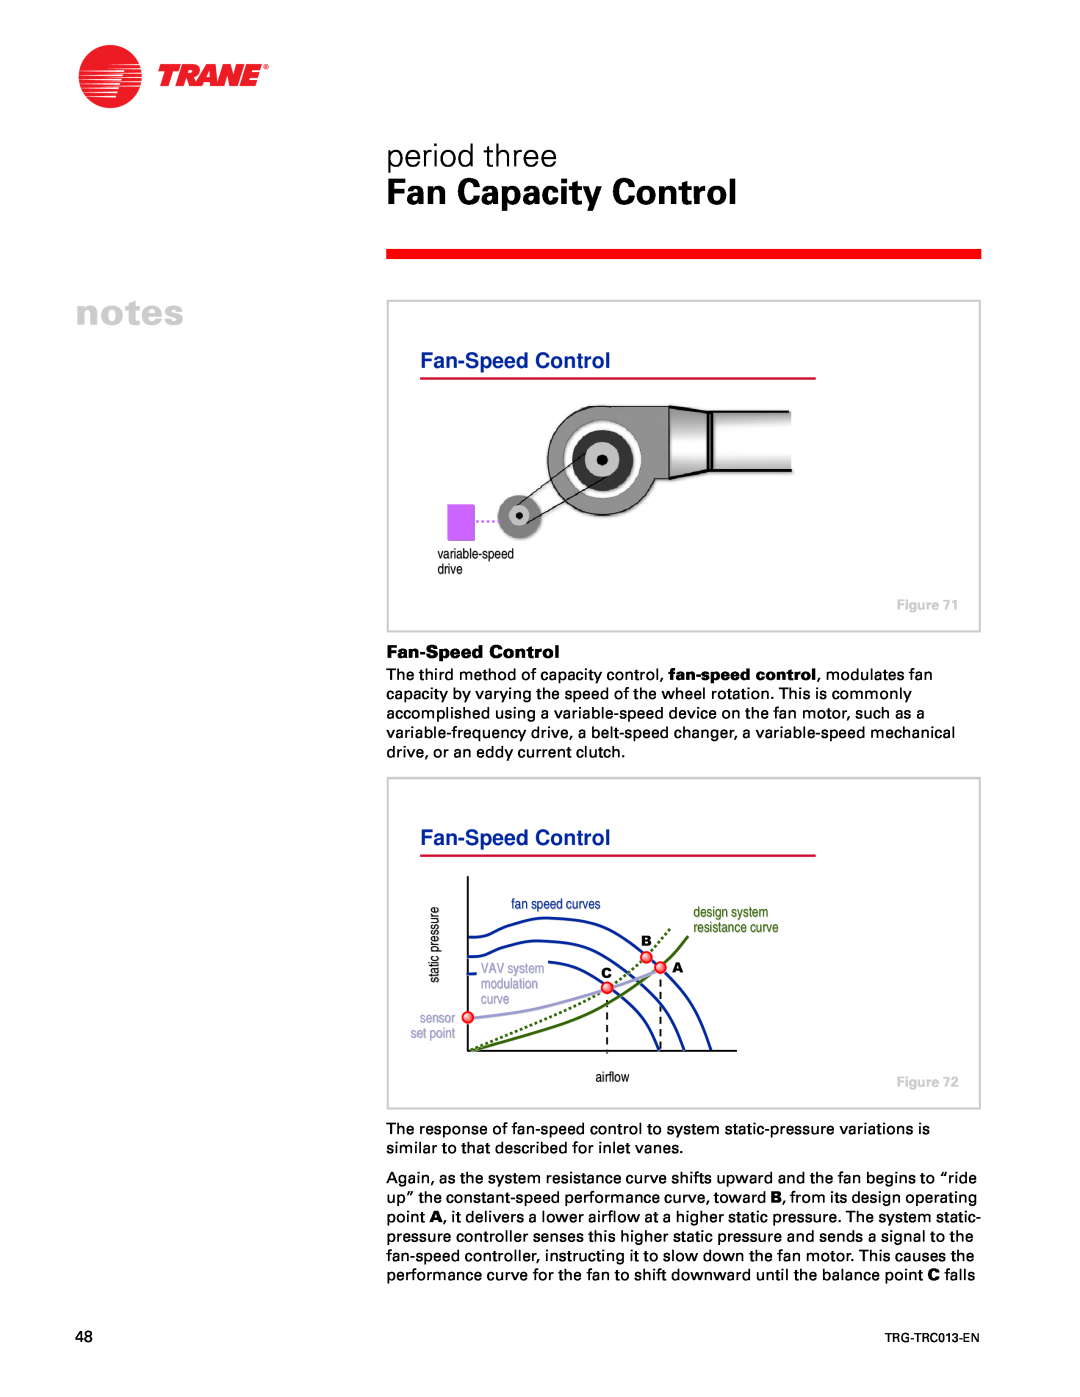 Trane TRG-TRC013-EN manual Fan-SpeedControl 